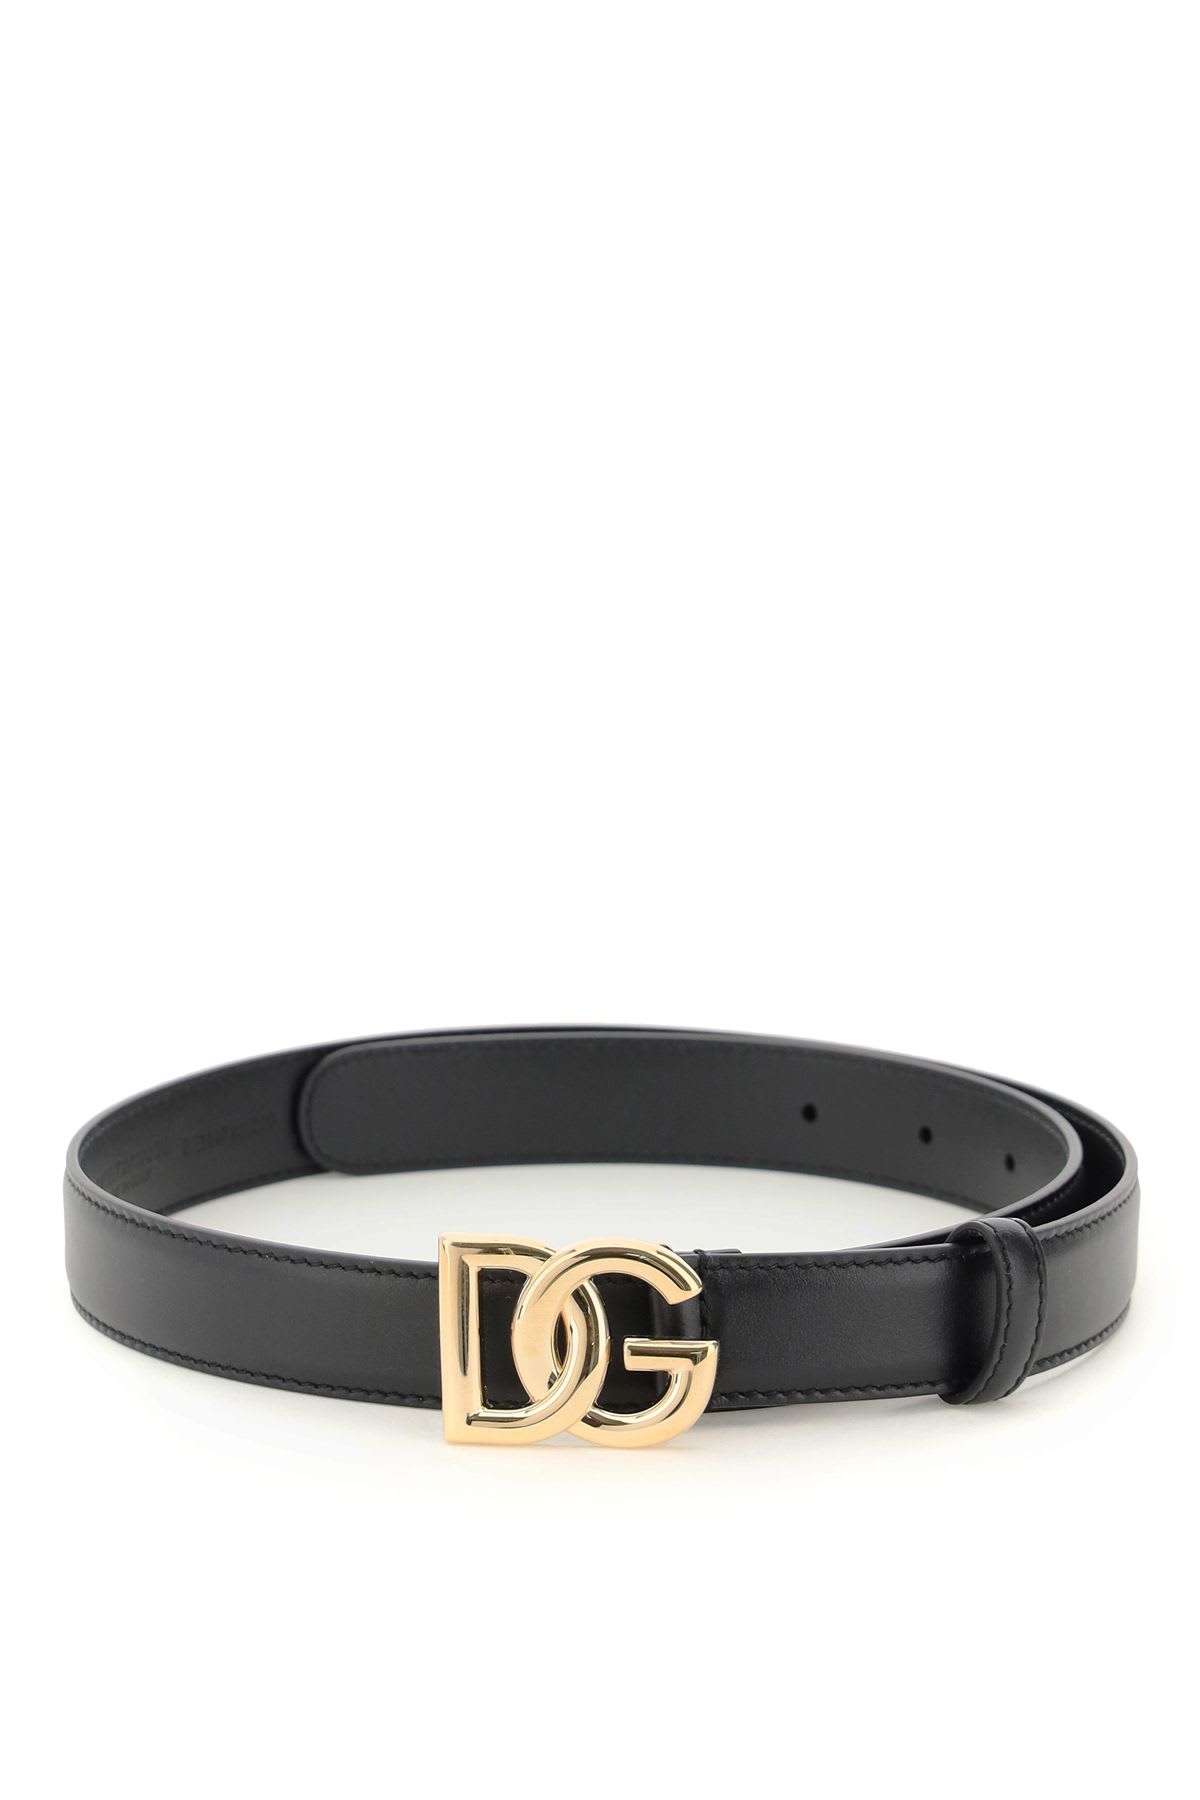 Dolce & Gabbana Smooth Calfskin Logo Belt